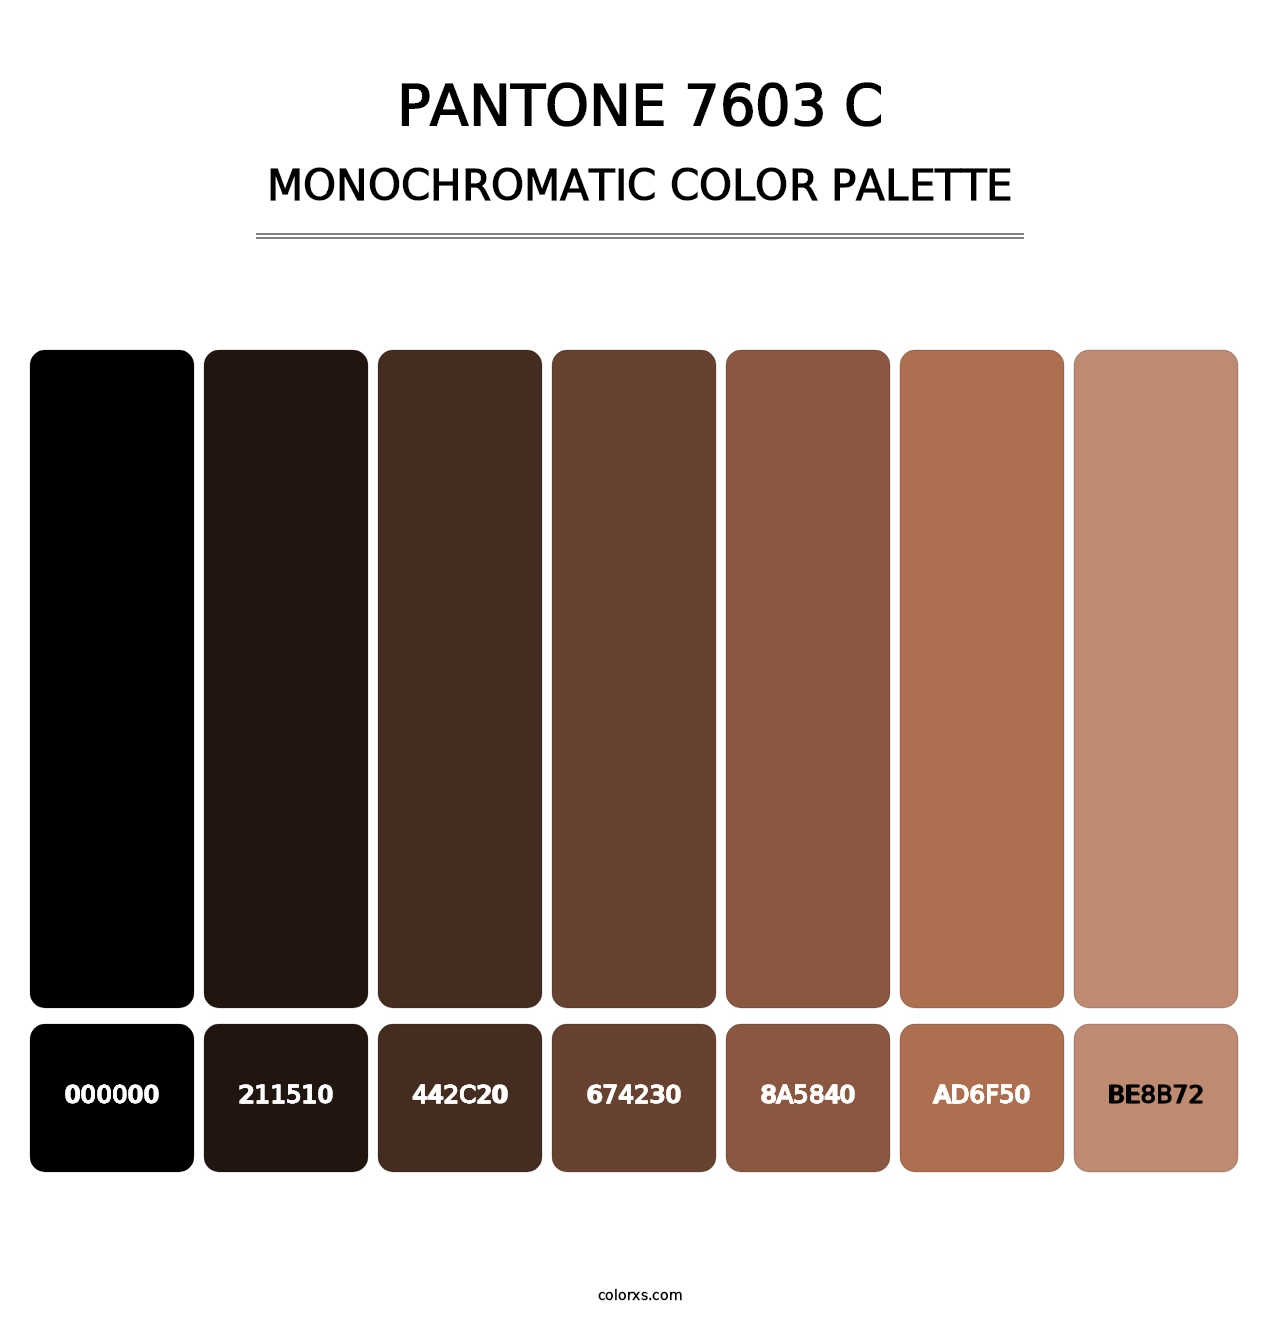 PANTONE 7603 C - Monochromatic Color Palette